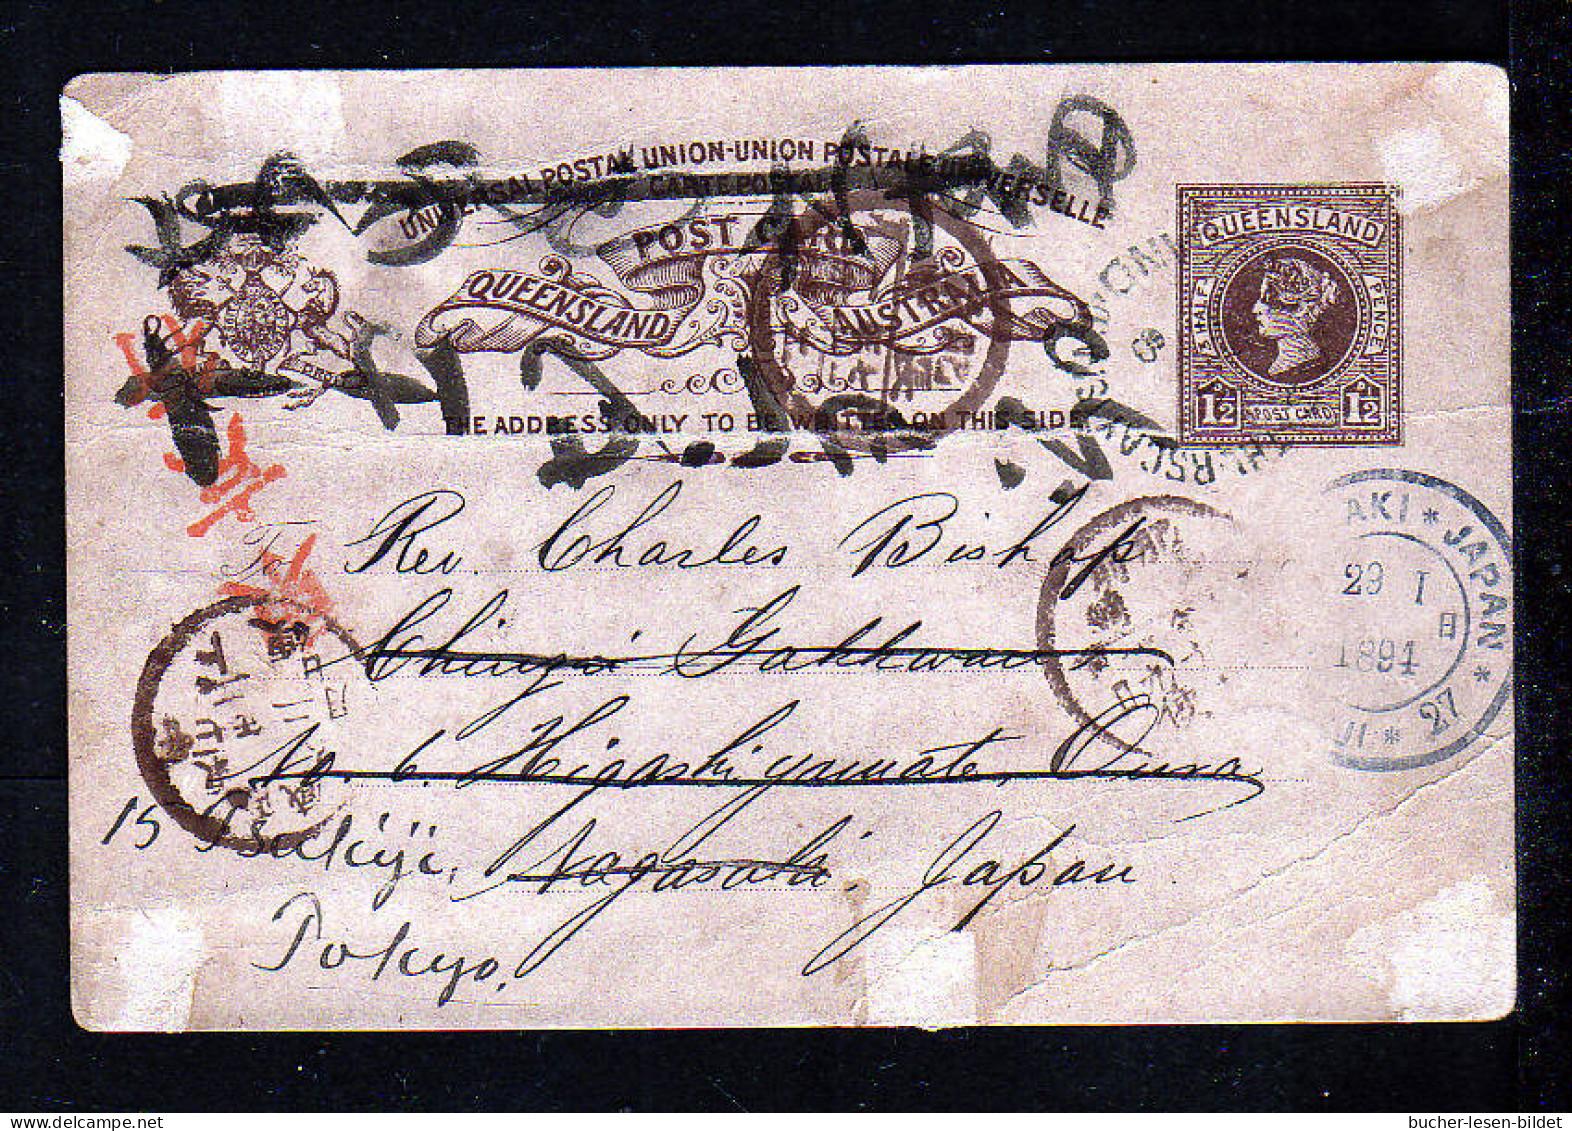 THURSDAY  ISLANDS - 1894 - 1 1/2 P. Ganzsache Gebraucht Nach Japan - Dort Nachgesandt - Storia Postale